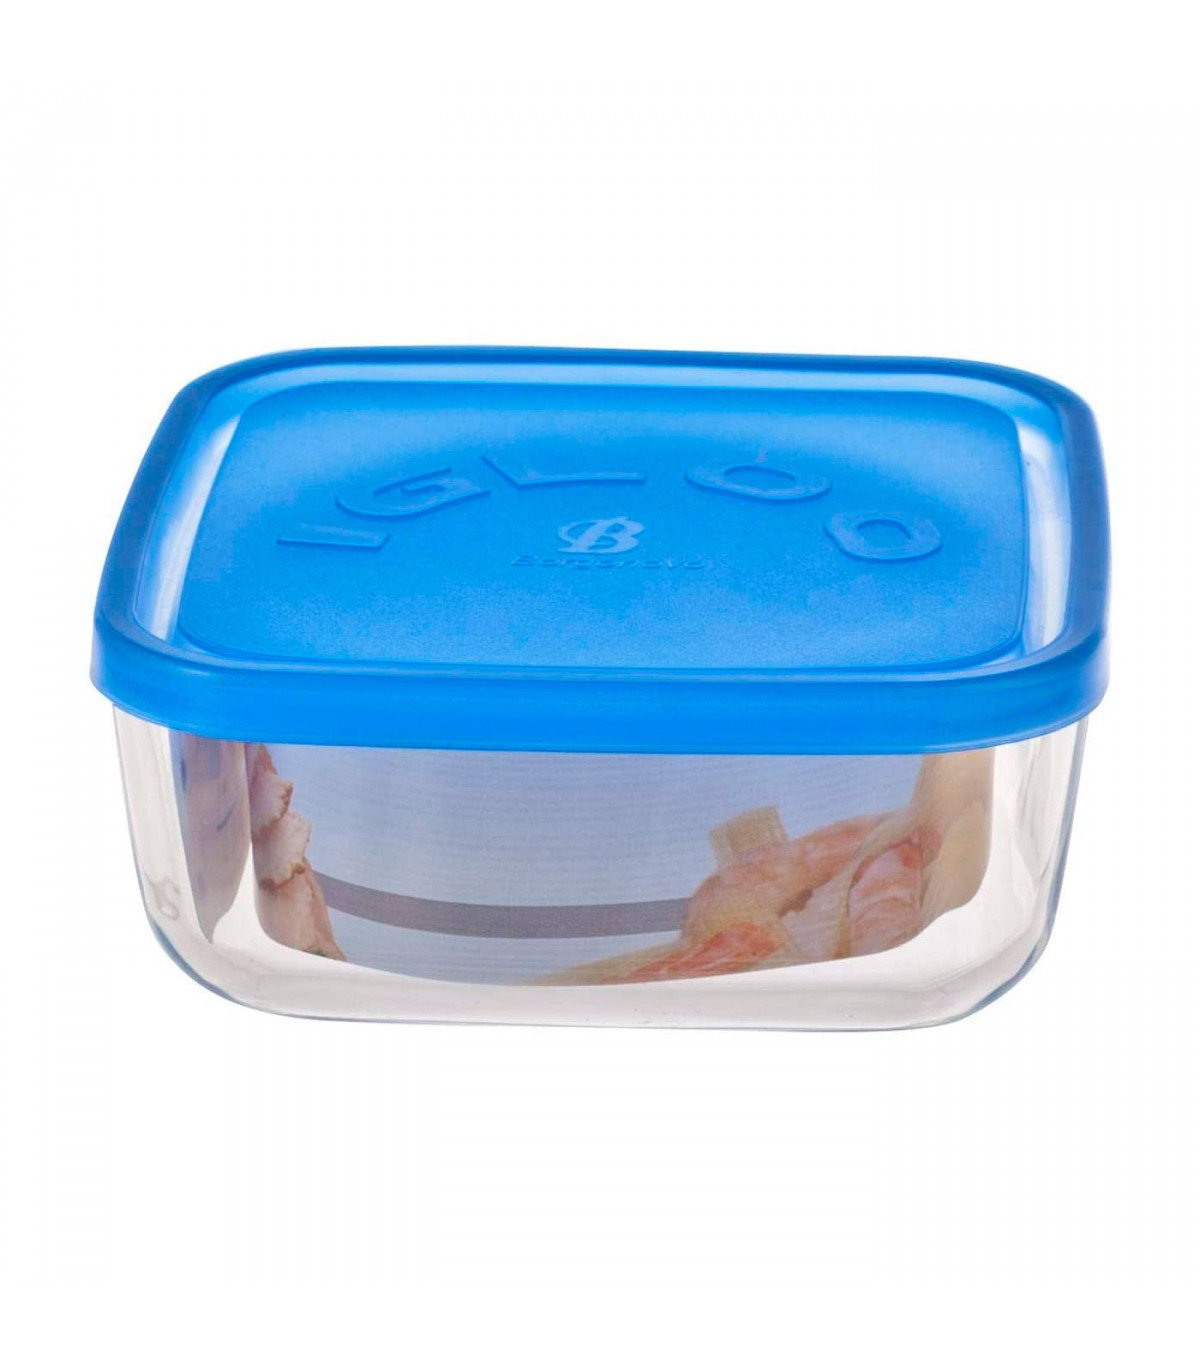 Fiambrera cuadrada de vidrio 15 x 15 x 6,2 cm, modelo Igloo, tapa de  plástico azul, recipiente para alimentos apto para lavavaji